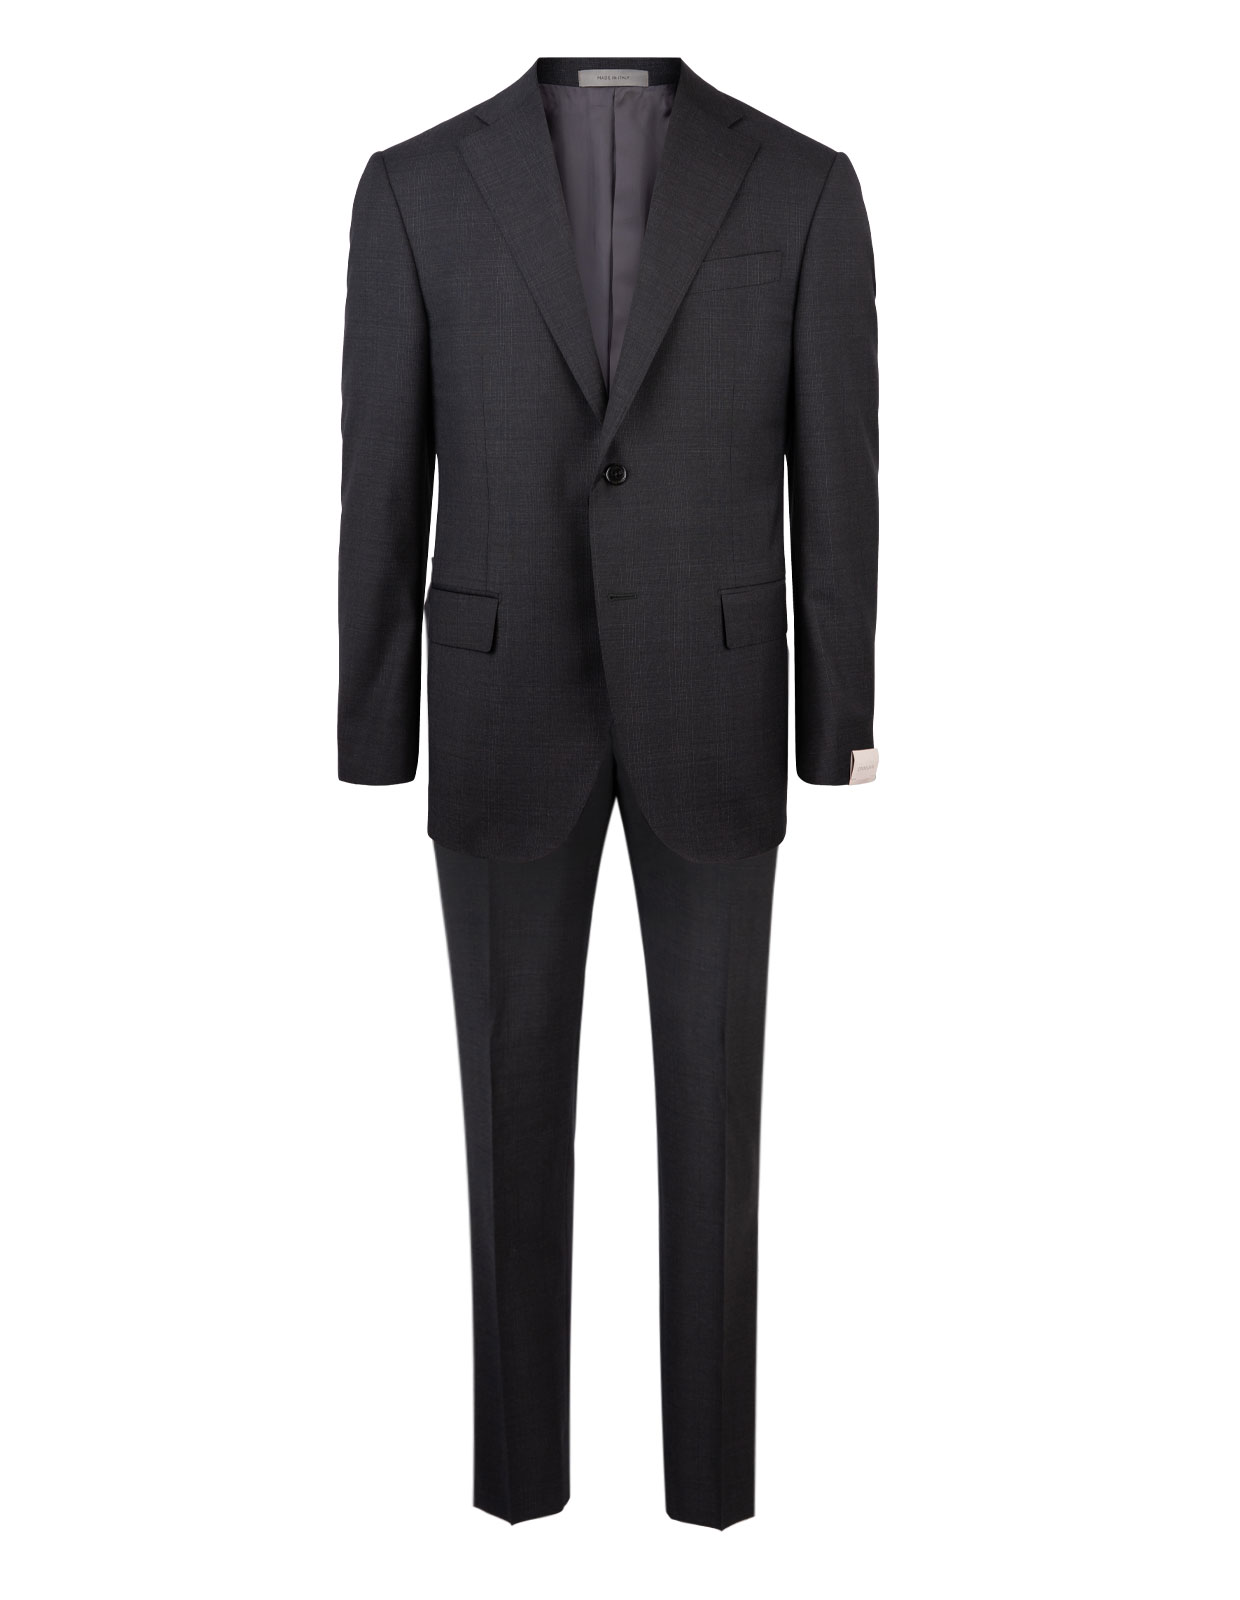 Leader Suit Wool Grey Check Stl 54